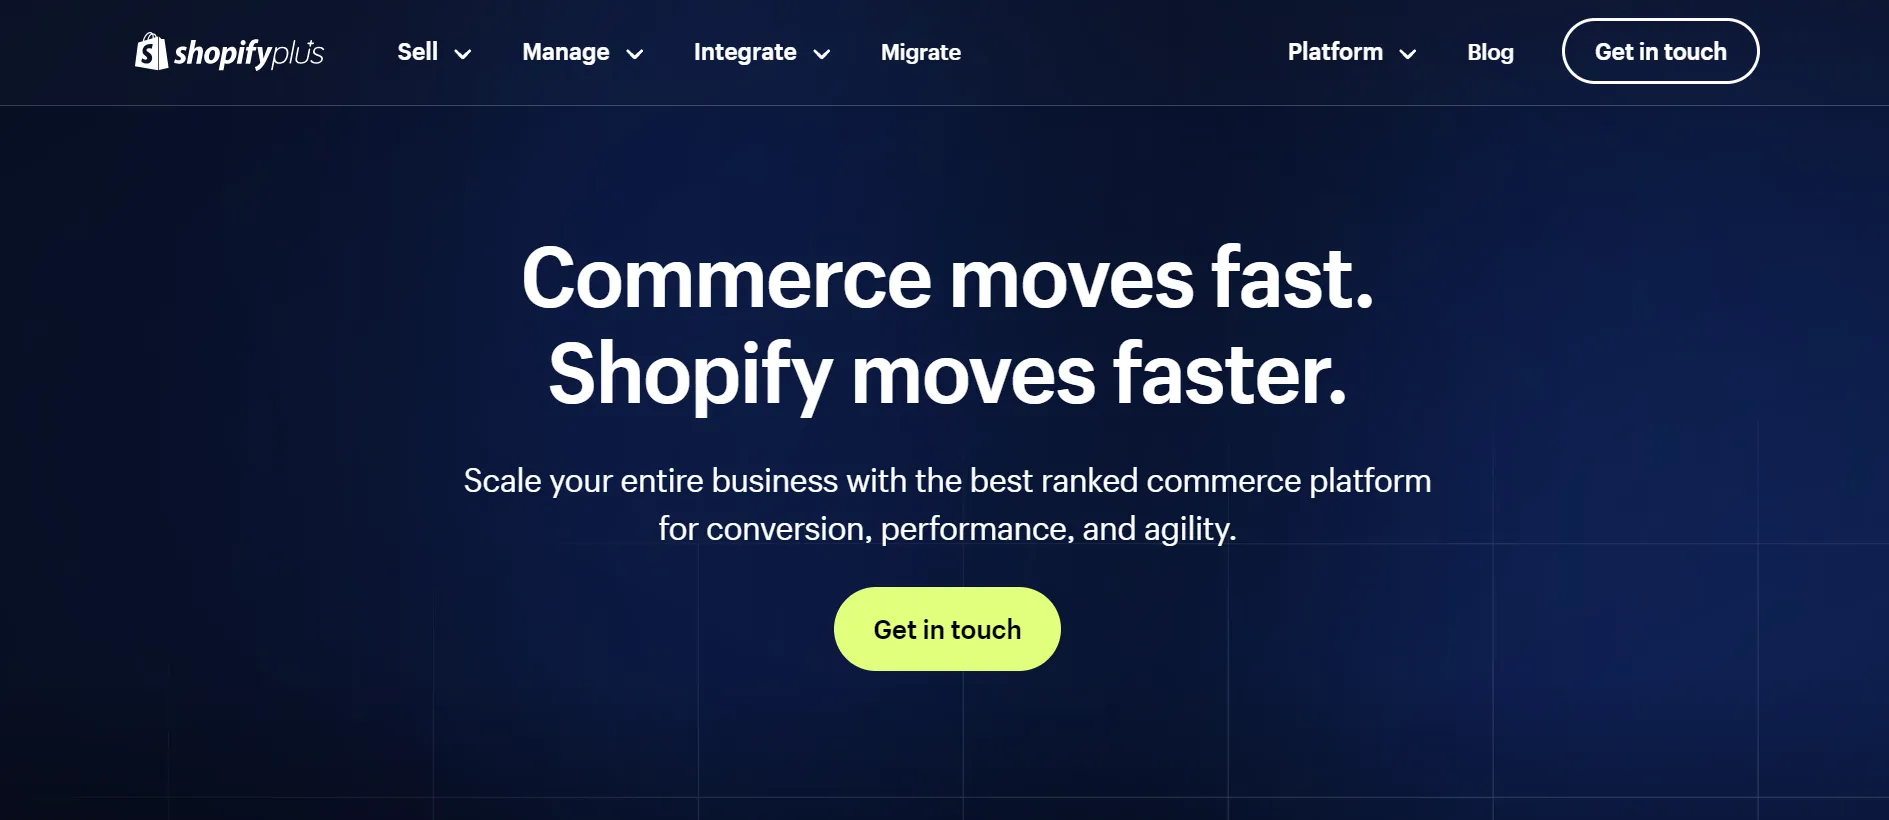 Shopify Plus homepage